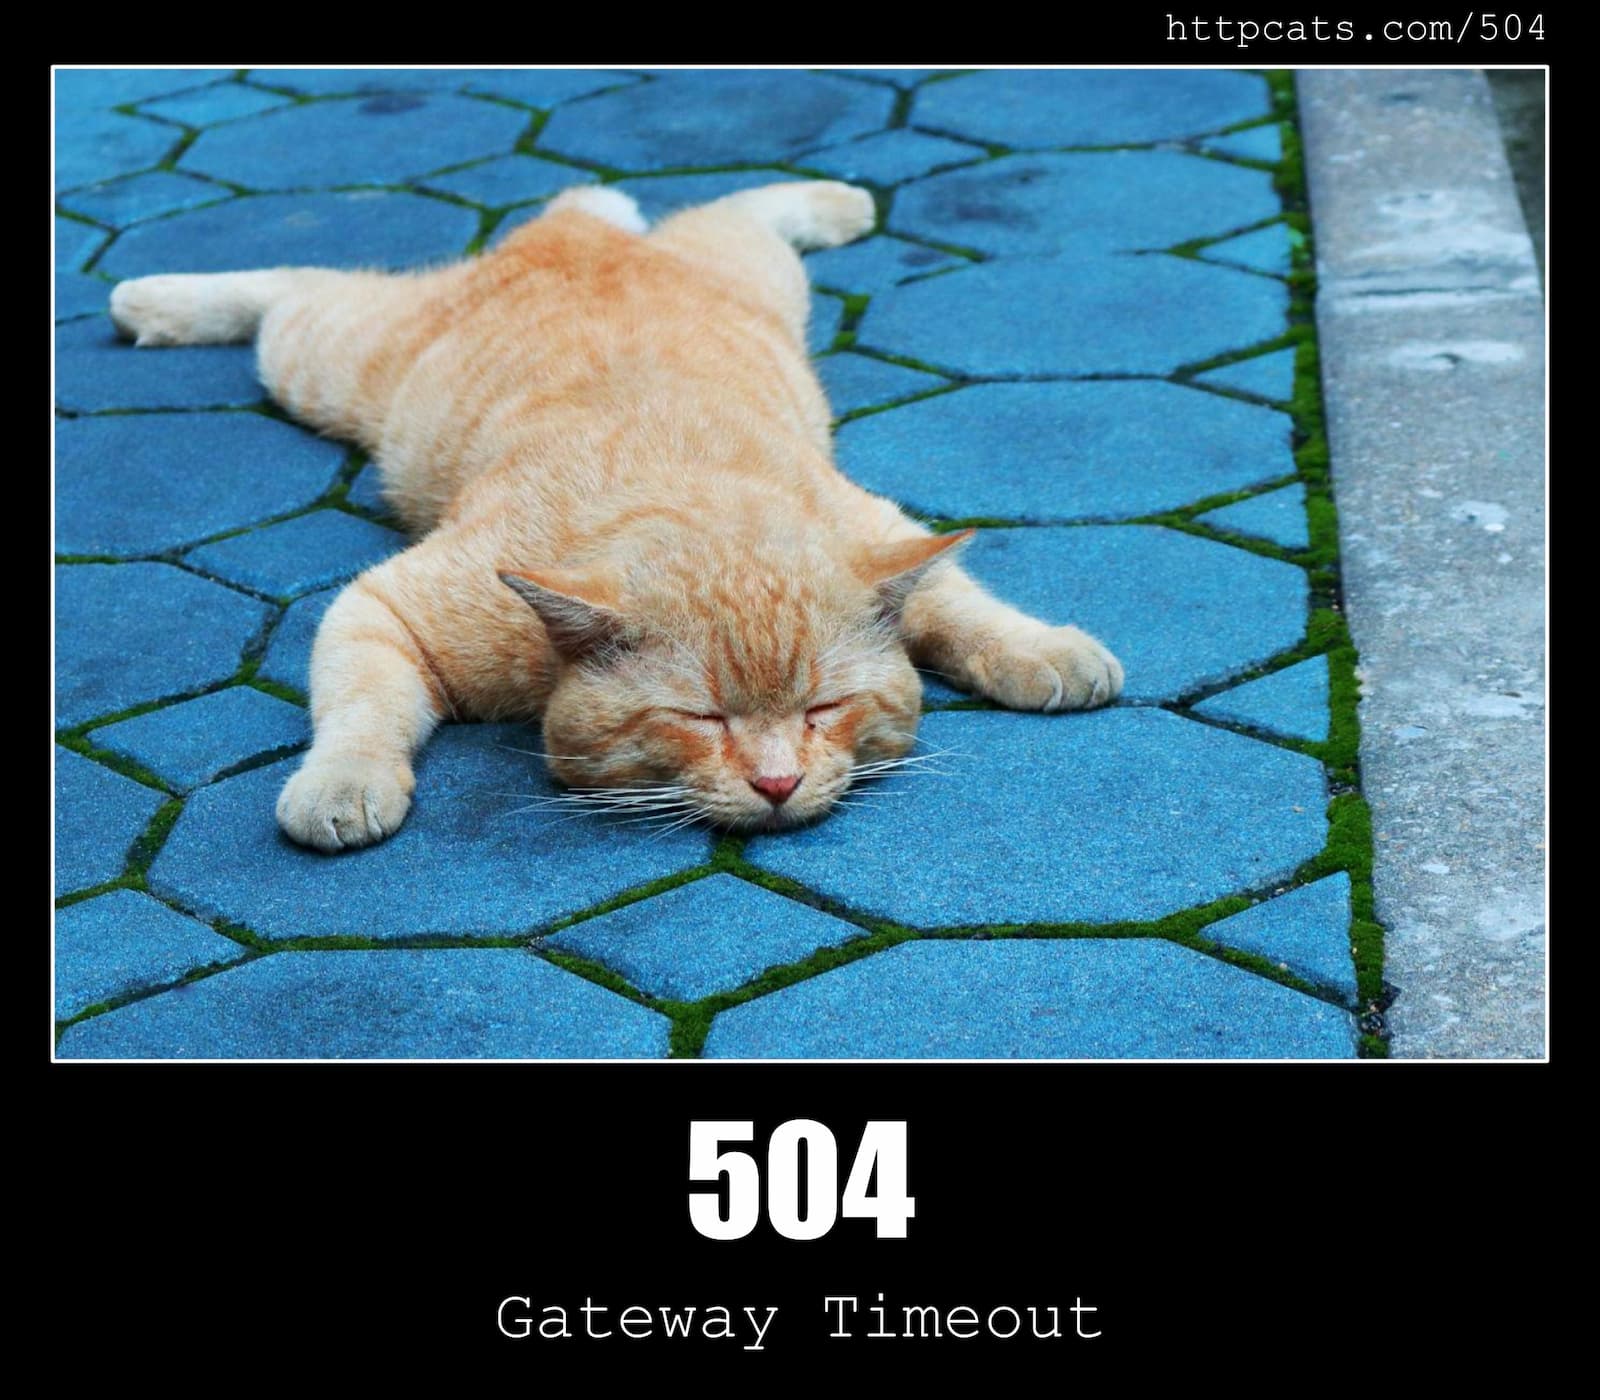 HTTP Status Code 504 Gateway Timeout & Cats